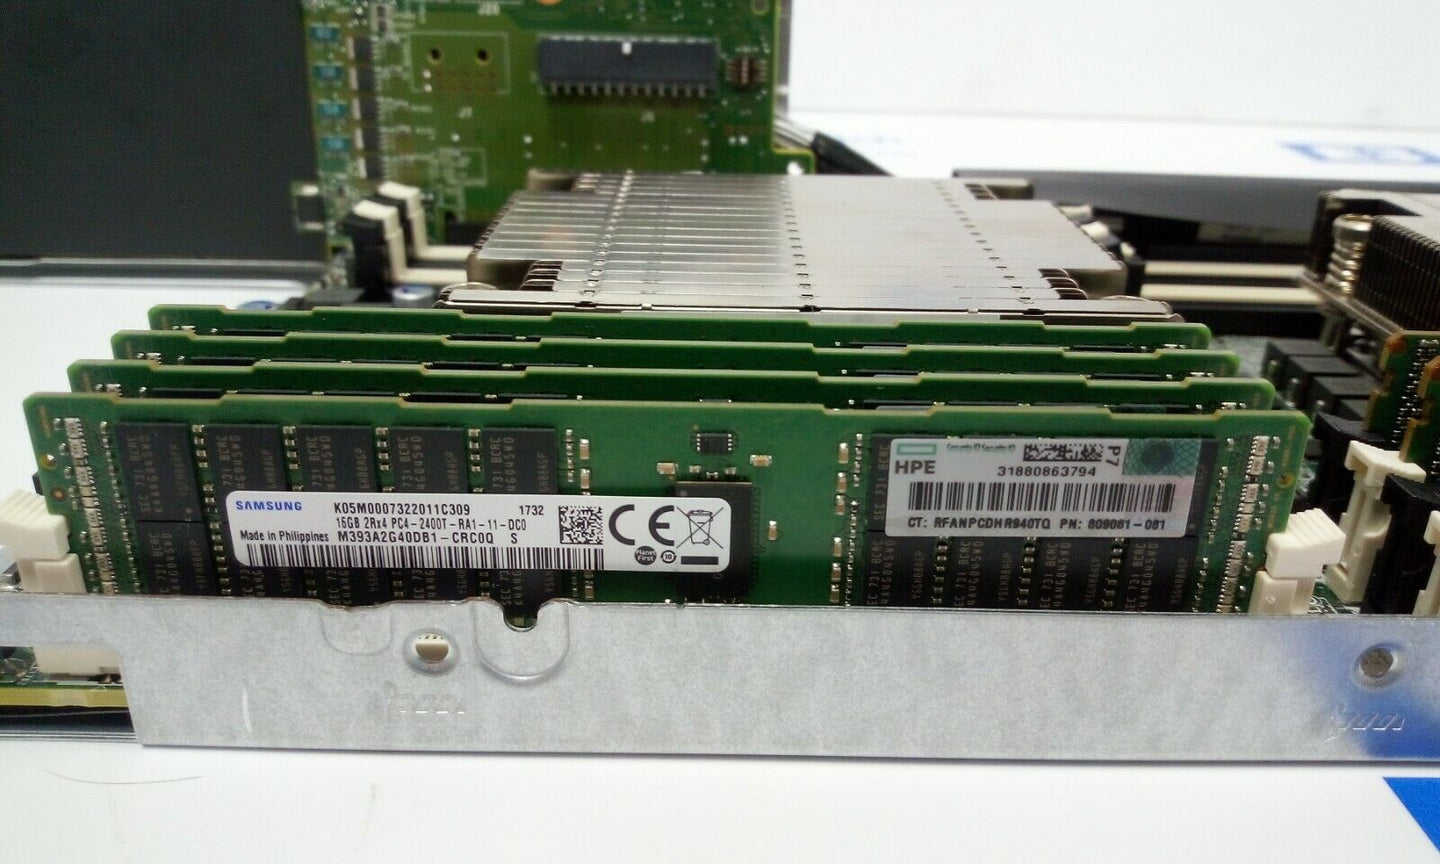 HPE 32GB KIT (2x16GB) 809081-081 PC4-19200T-R DDR4-2400Mhz 2RX4 ECC REG Server